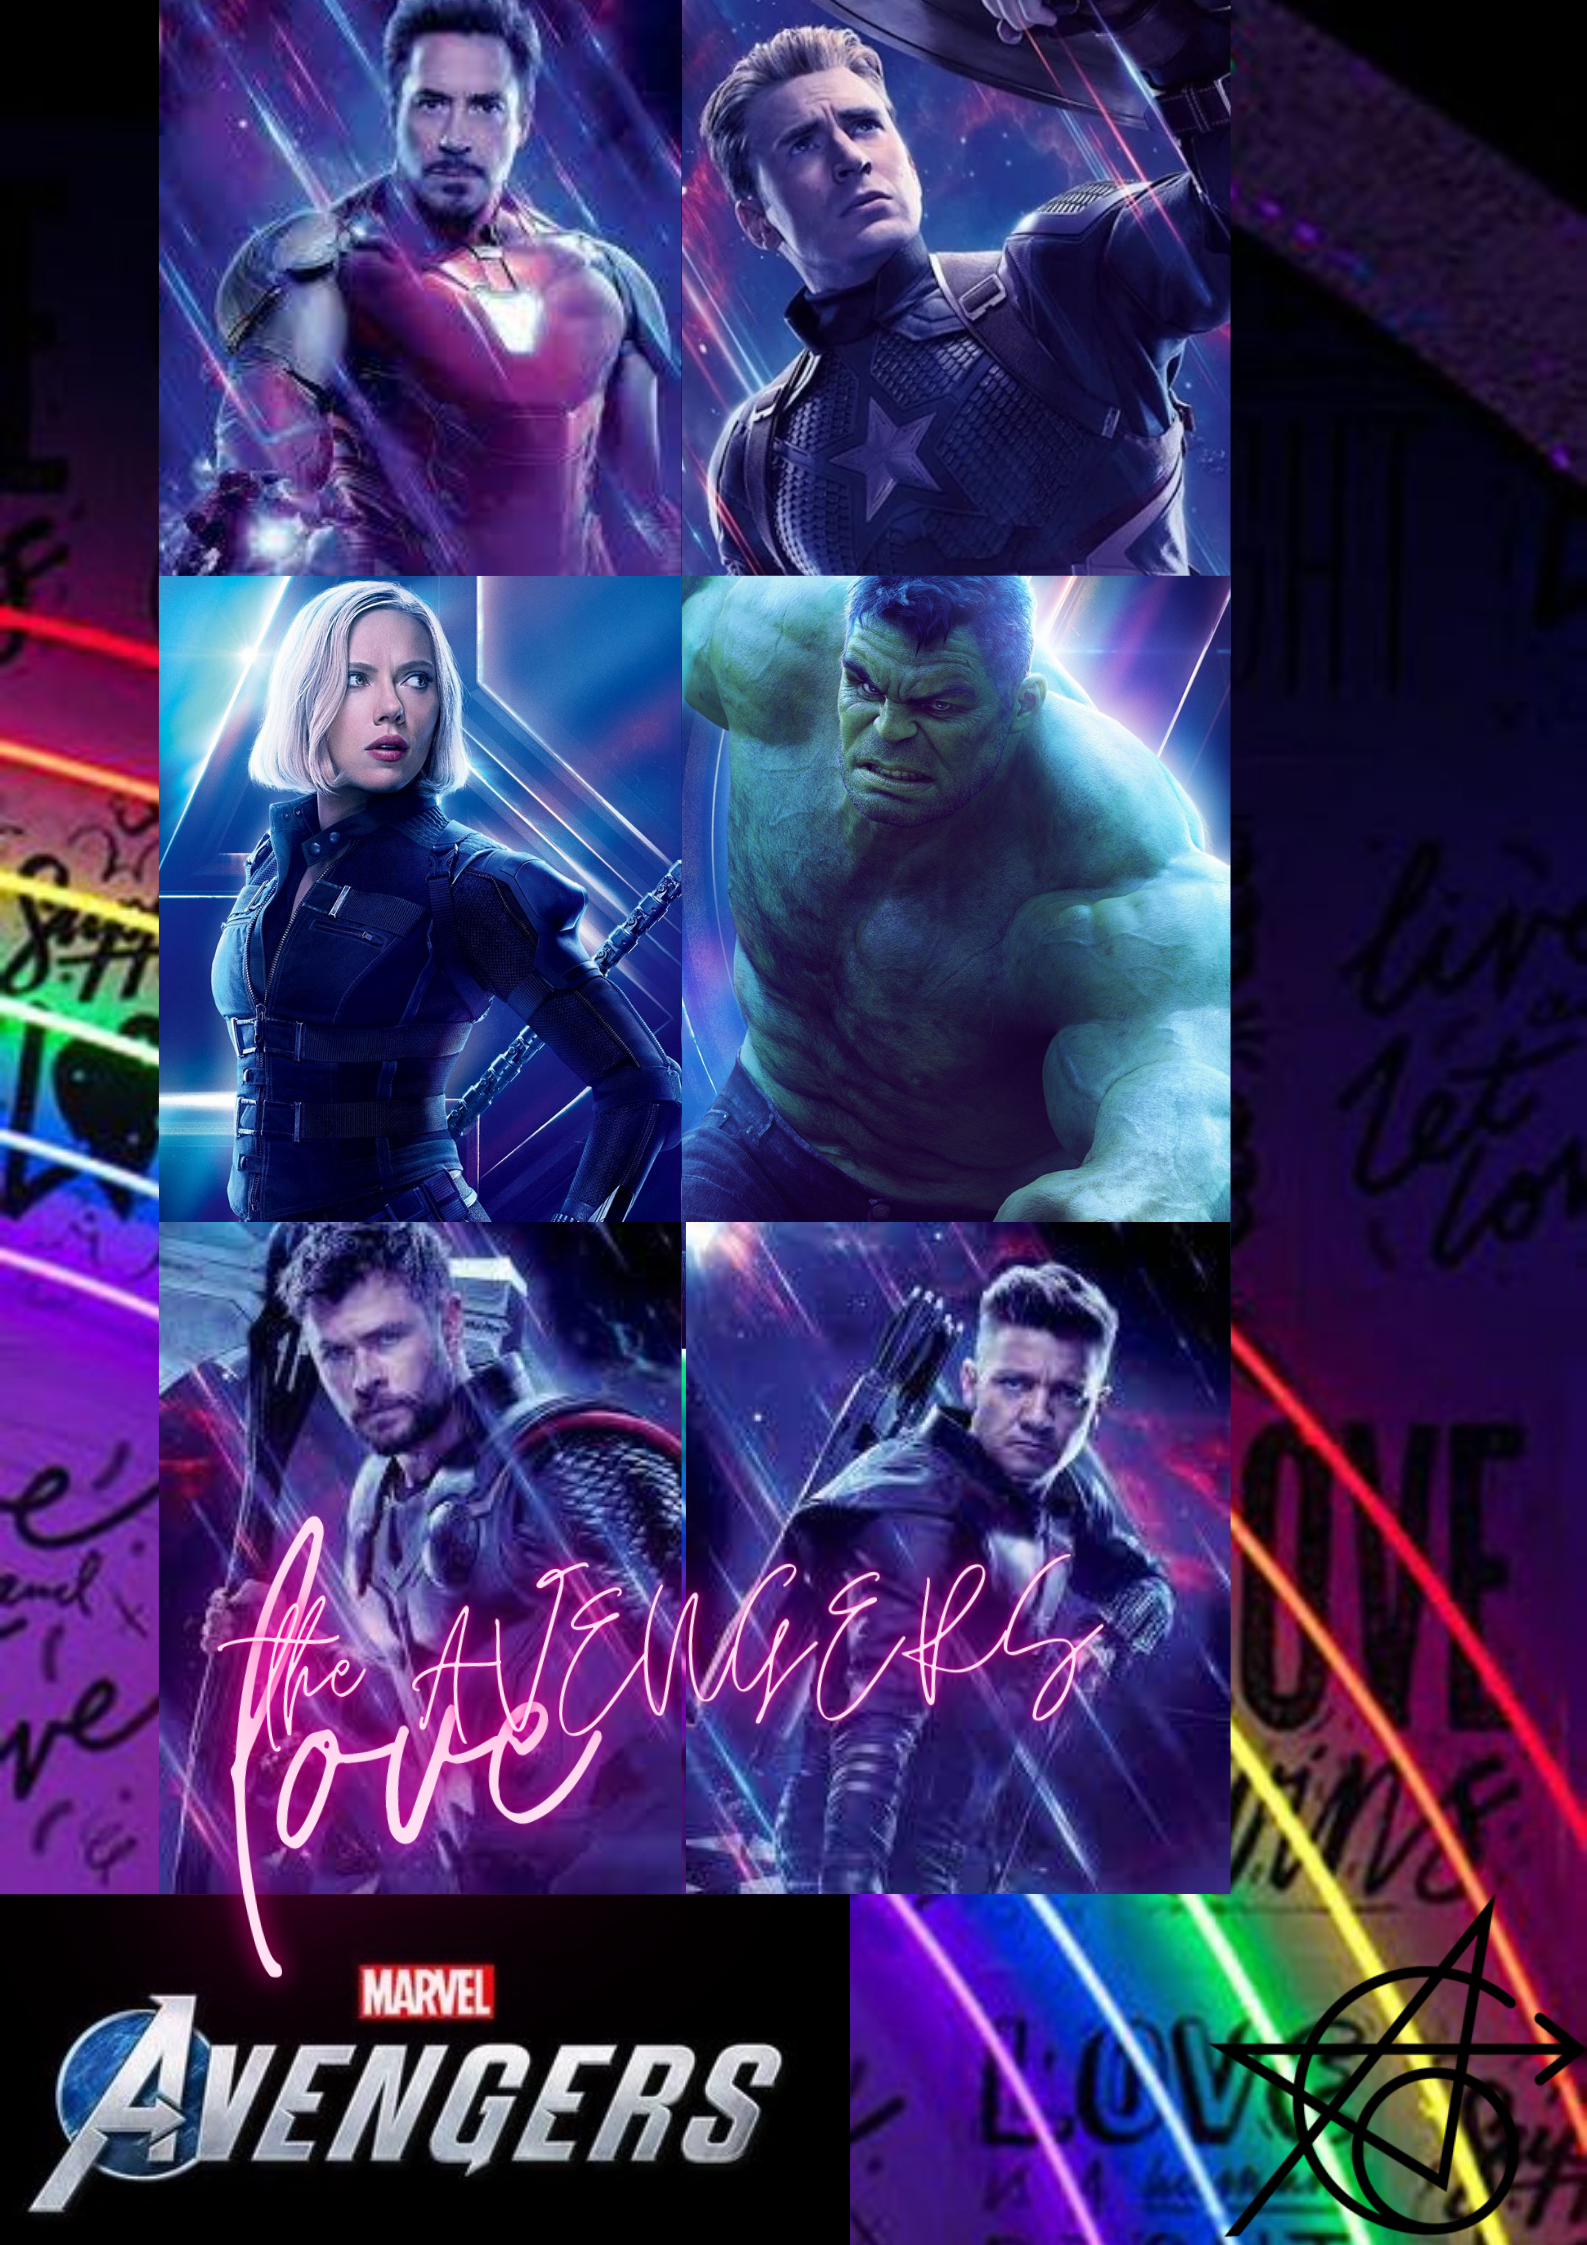 THE AVENGERS WALLPAPER\AESTHETIC WALLPAPER\RAINBOW. Avengers wallpaper, Marvel wallpaper, Aesthetic wallpaper